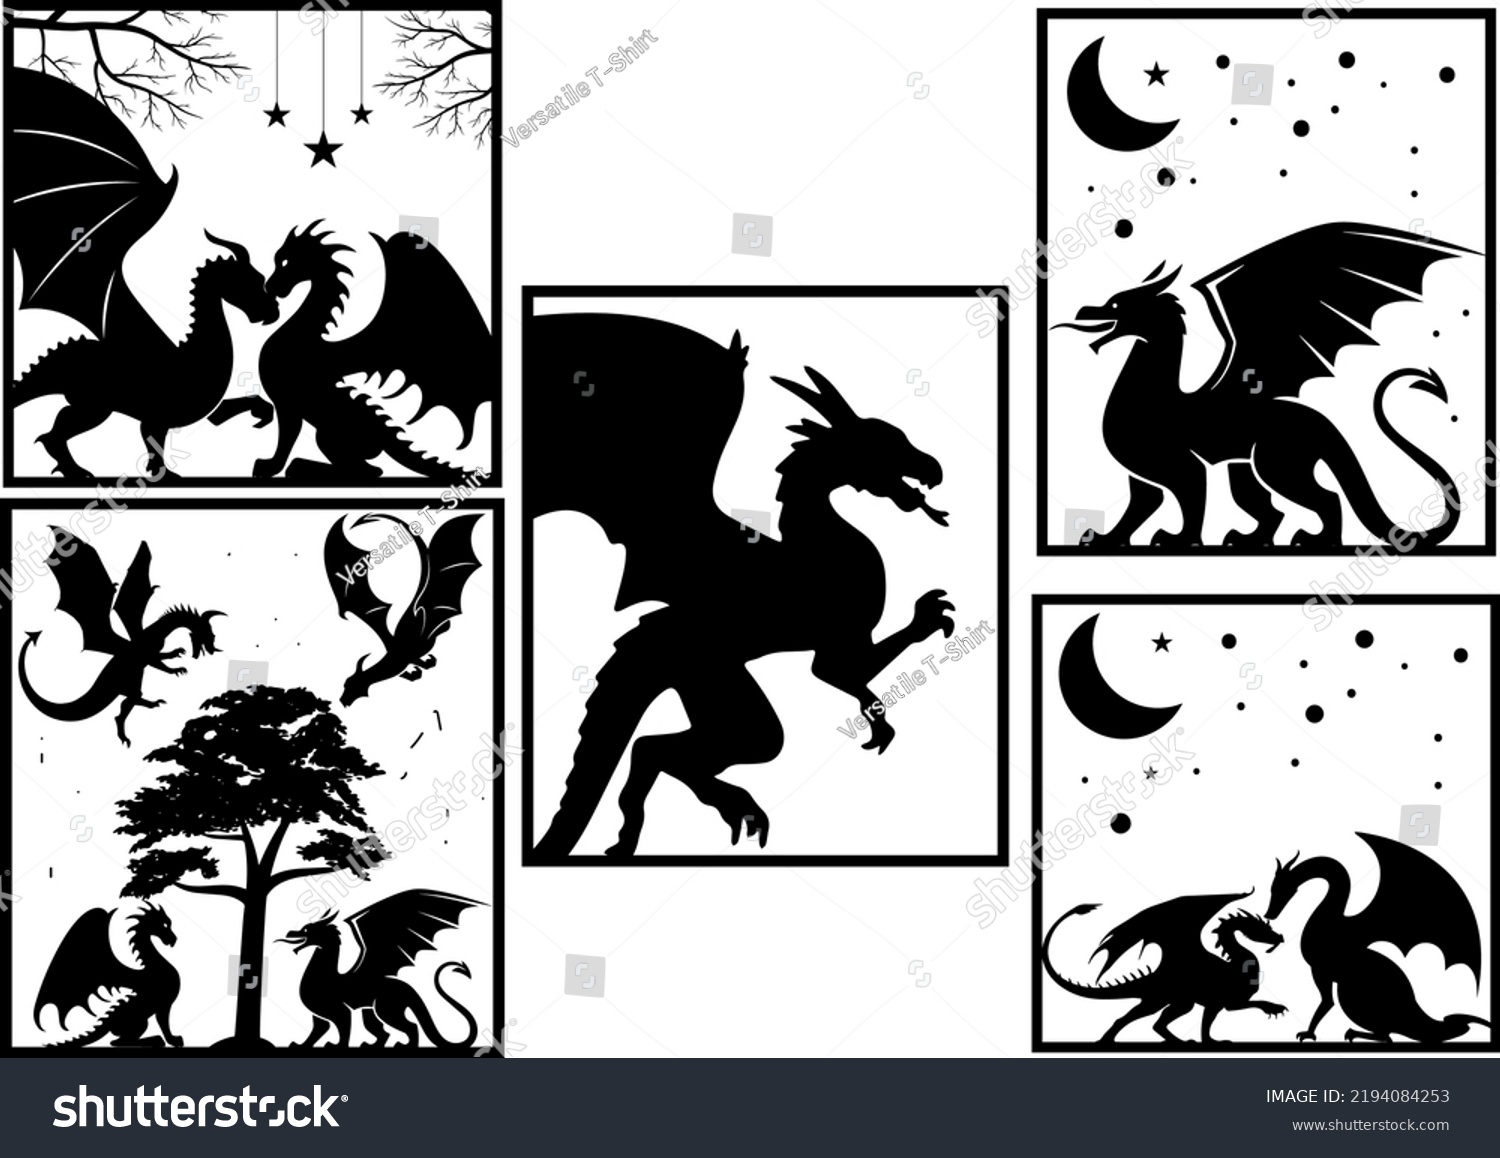 SVG of Dragon Svg Bundle, Dragons Cut File, silhouette Svg, Dragons Head, Animal Svg, Dragon Silhouette, Decor, Home, Printable, Svg, Png svg